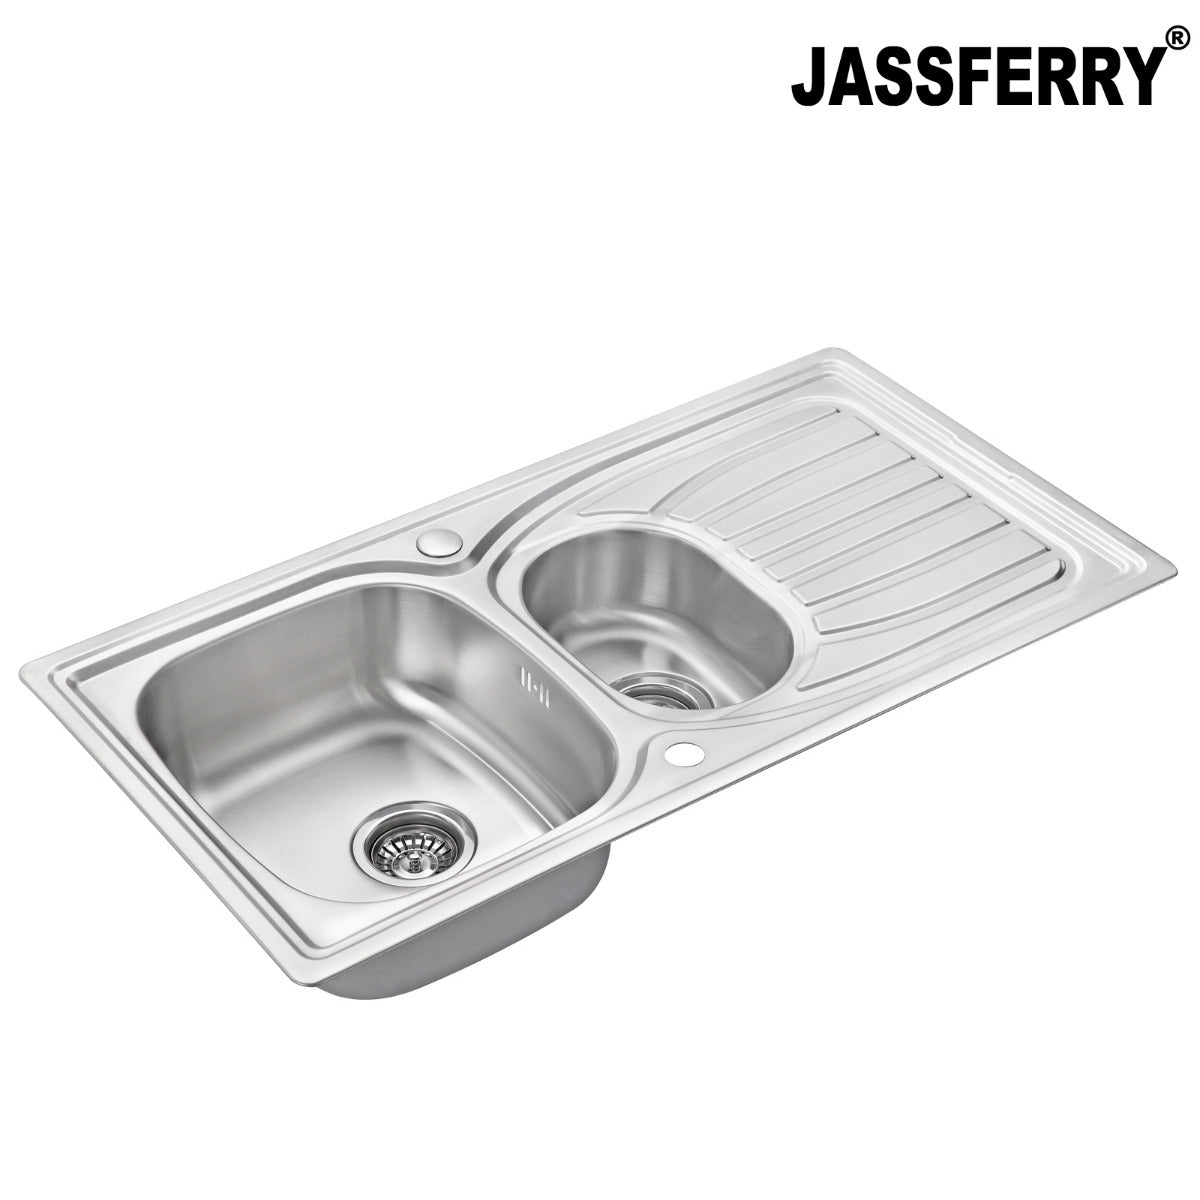 JassferryJASSFERRY Stainless Steel Kitchen Sink Inset One Half Bowl Reversible Drainer - 954Kitchen Sinks